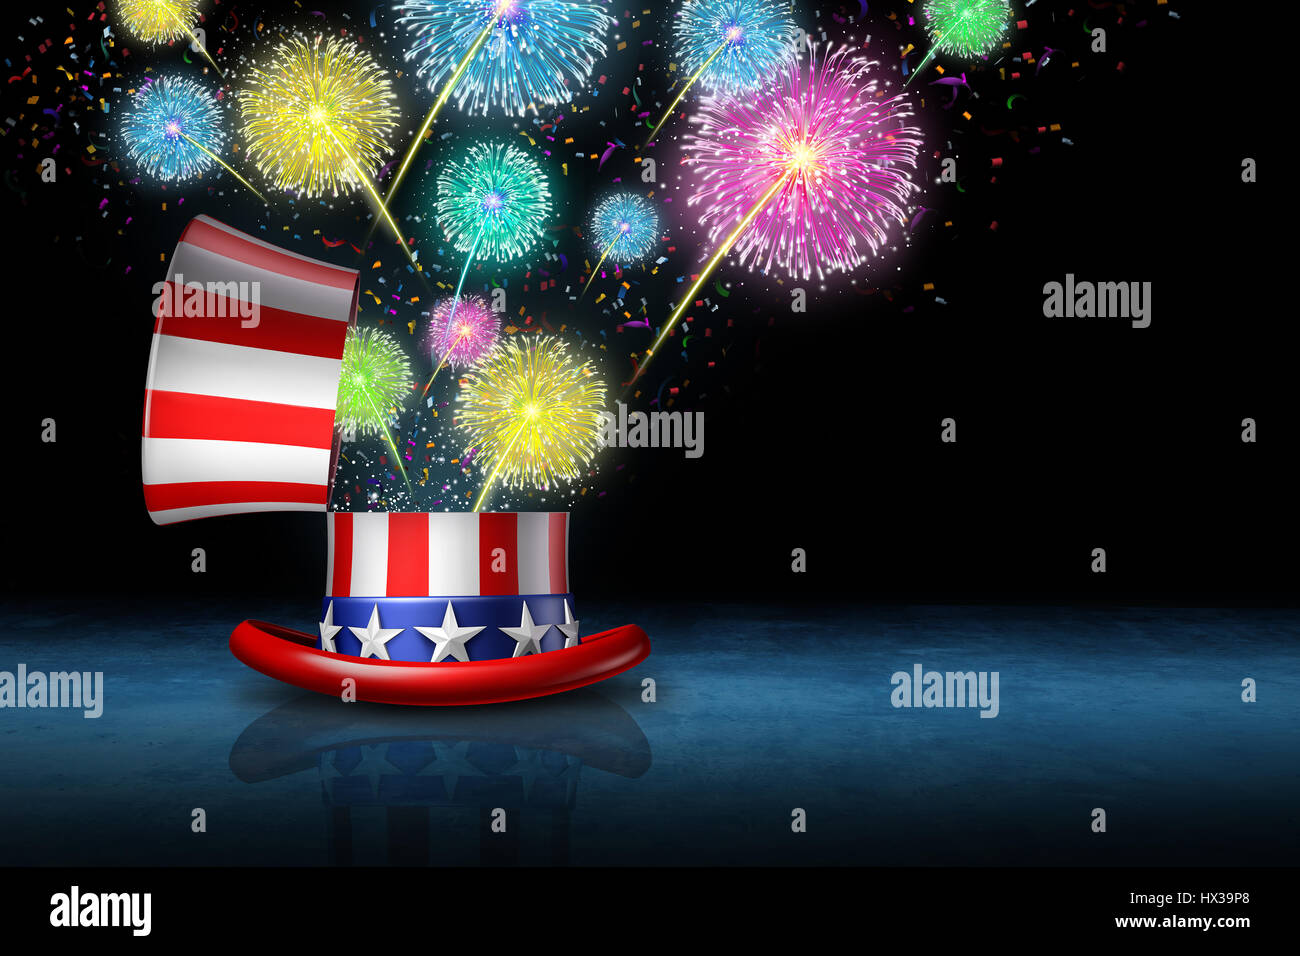 Am 4. Juli Feier als Unabhängigkeitstag traditionellen Partei Freiheit und amerikanischen stolz mit einer offenen Flagge-Hut mit einem Feuerwerk zu feiern. Stockfoto